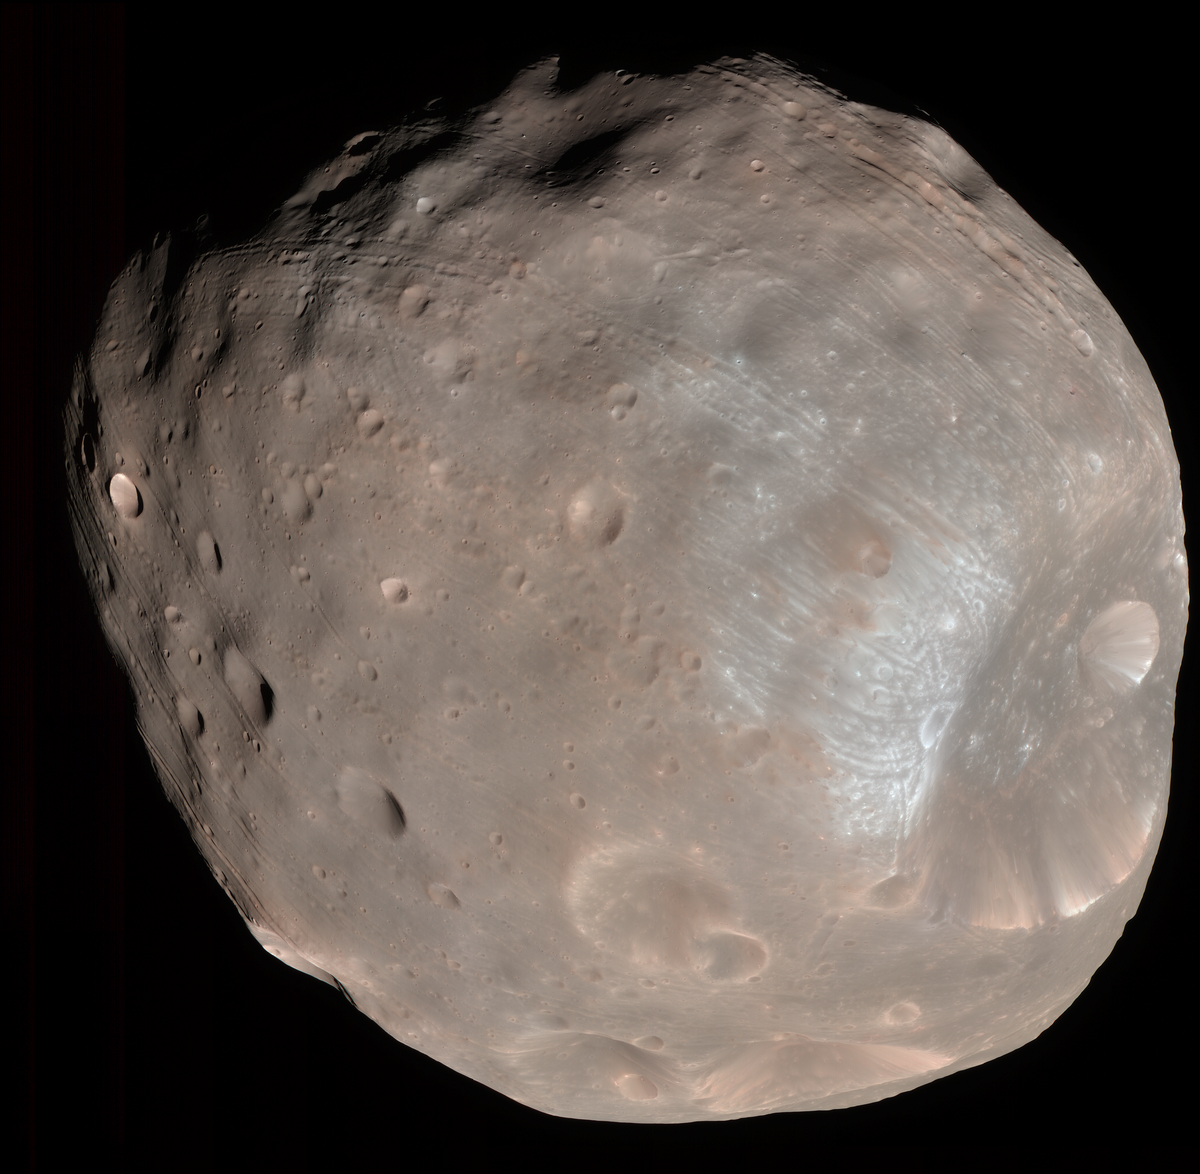 Vue de Phobos par la sonde Mars Reconnaissance Orbiter.